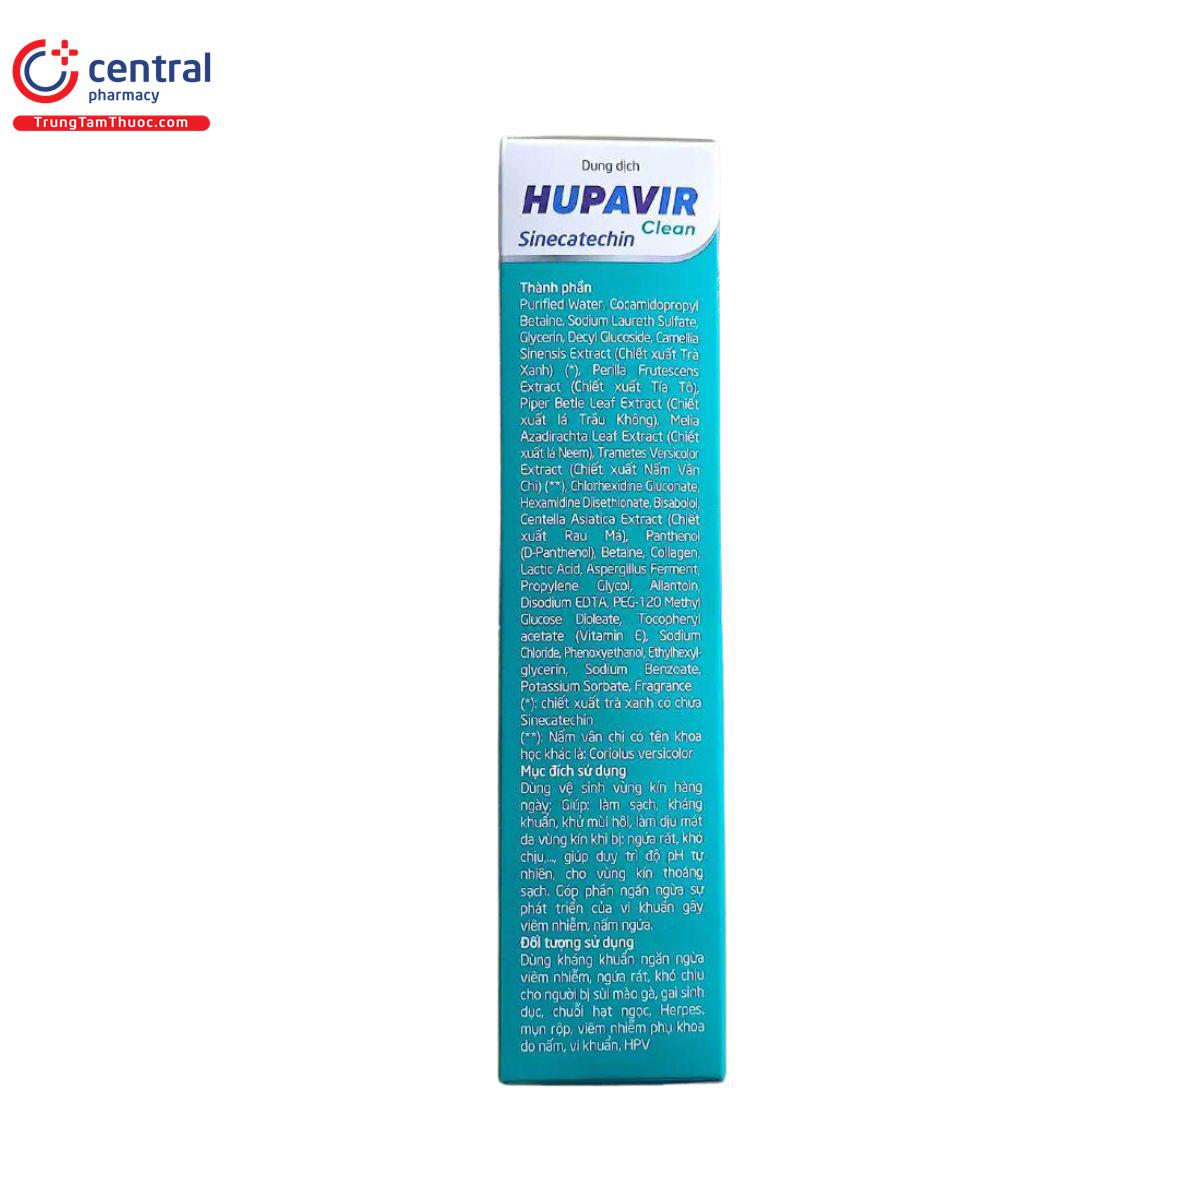 dung dich ve sinh hupavir 2 N5207